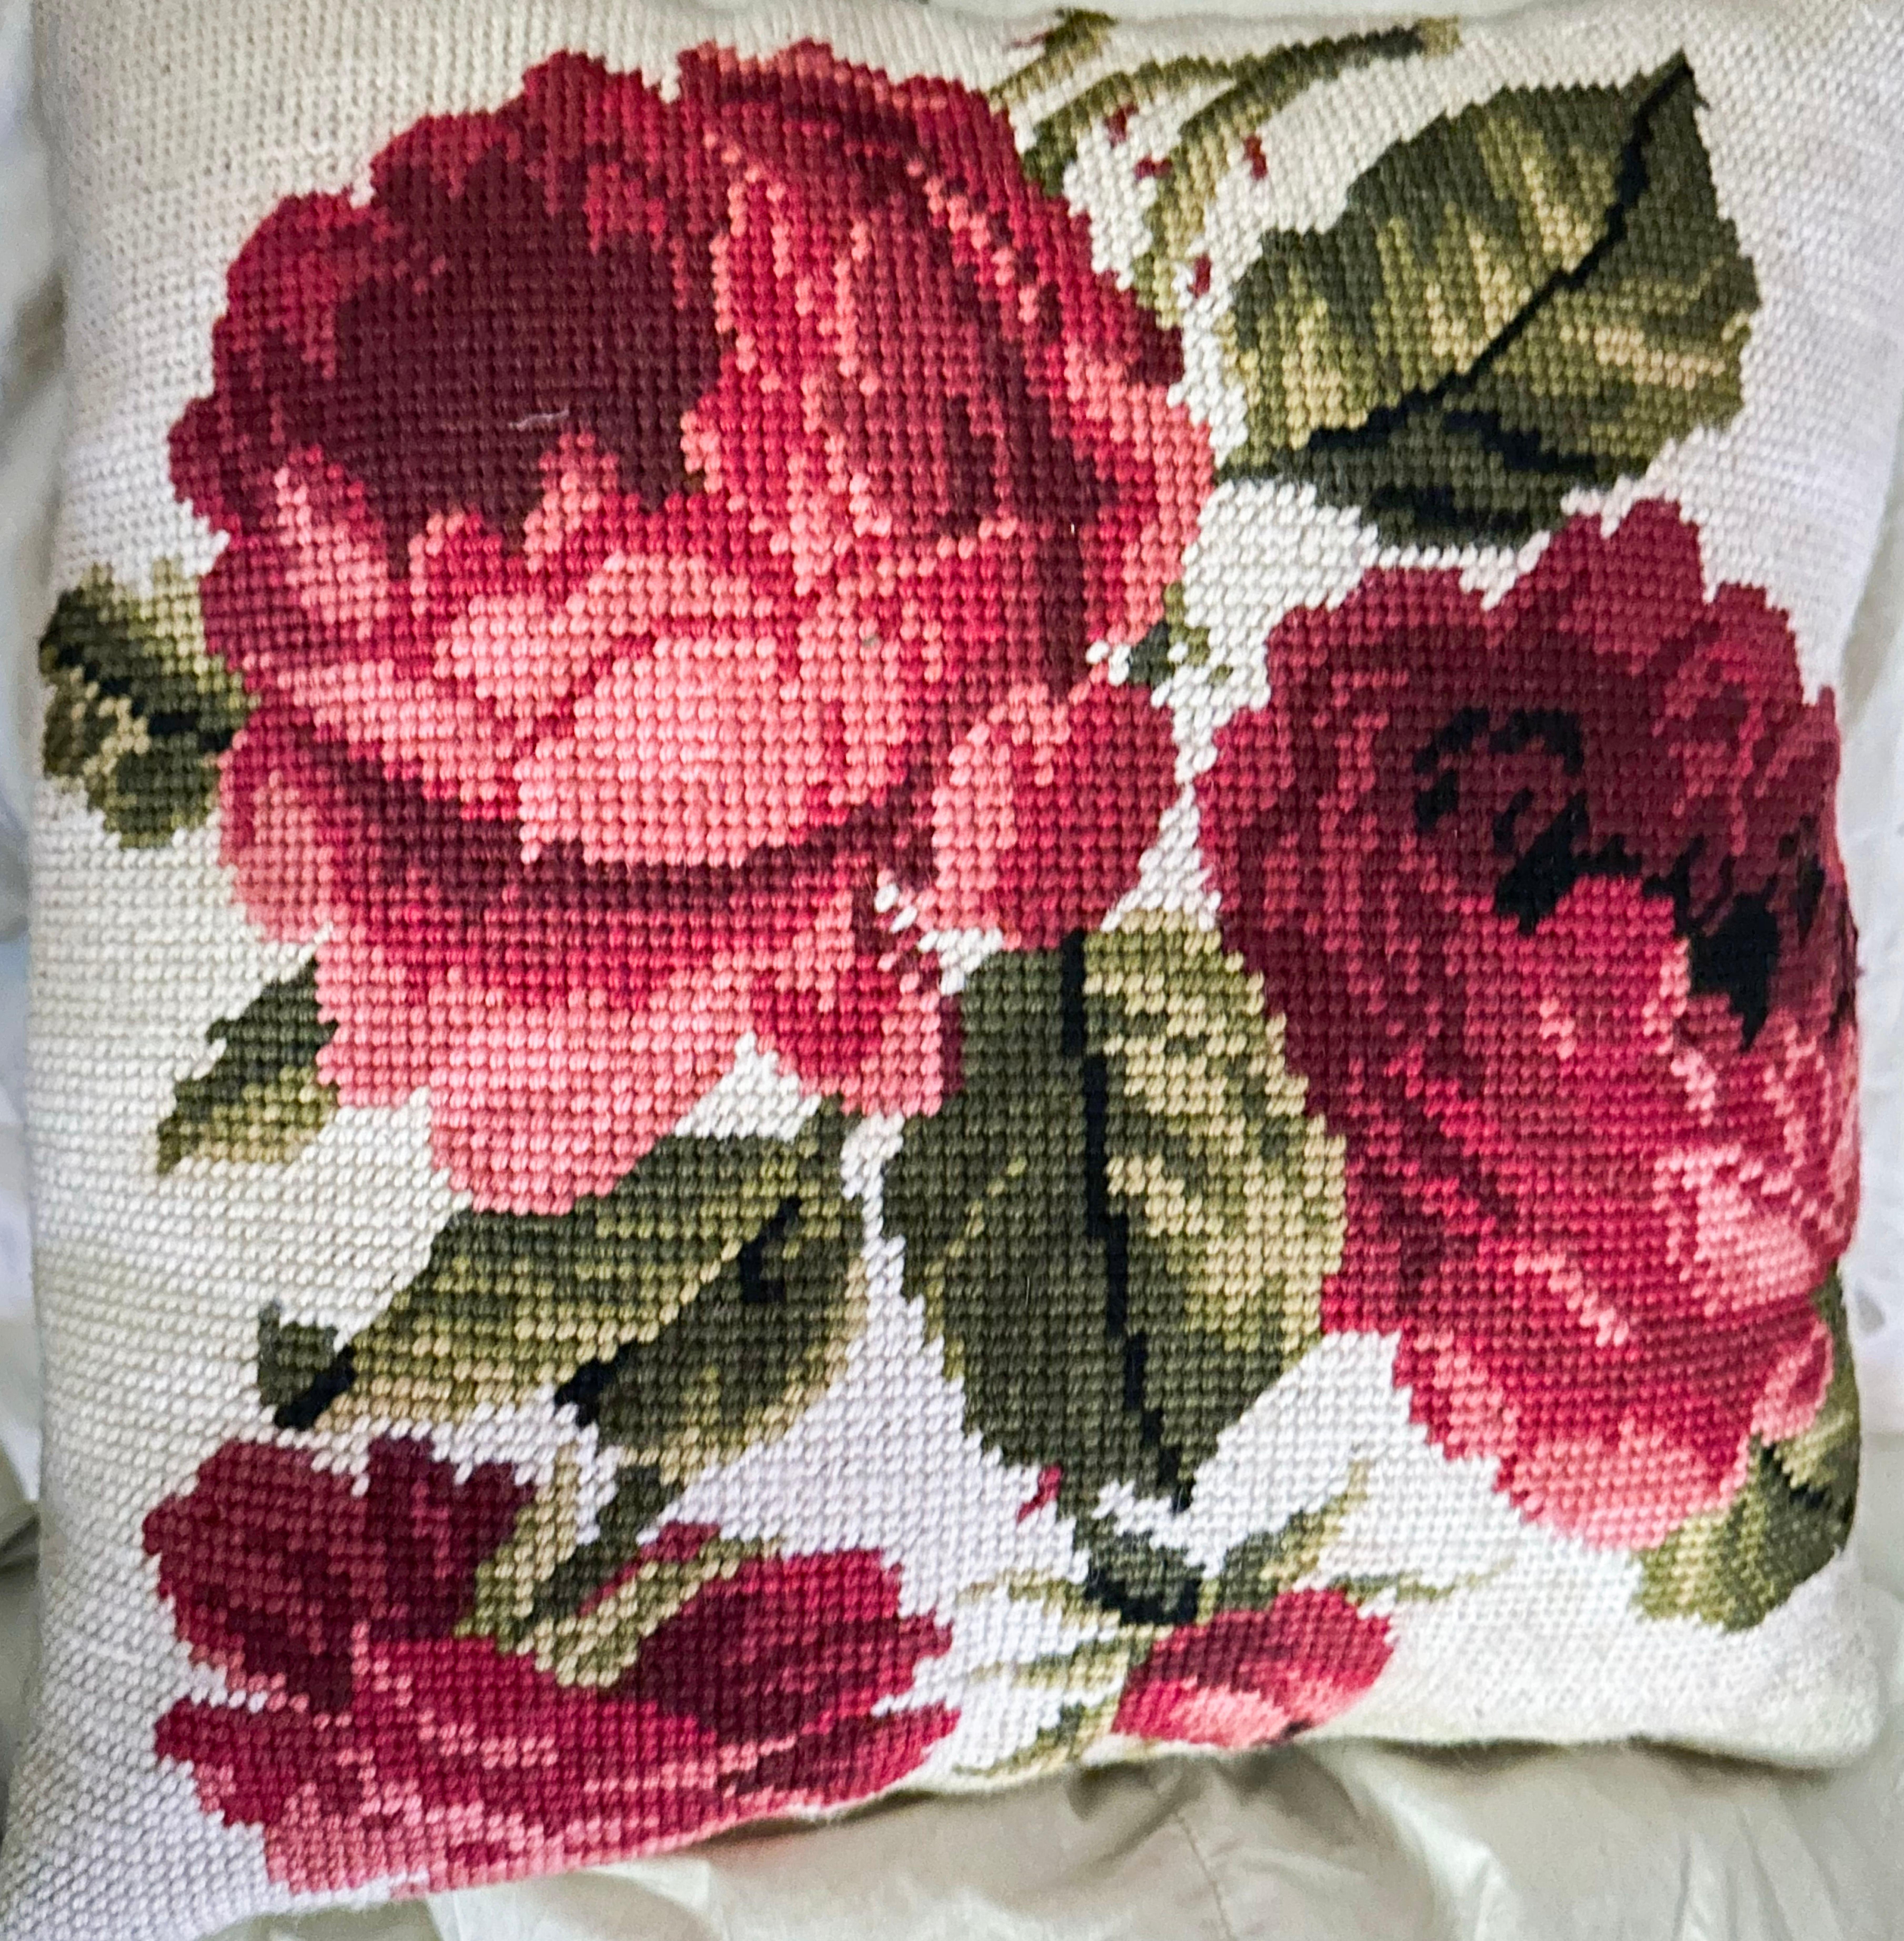 Nadelspitze Rose mit Fortuny Textile Throw Pillow, Daunen & Federn, Custom.  Hinreißend. Aus einem Anwesen in der Park Avenue. Ursprünglich kombiniert mit einem Dorothy Draper Sofa.